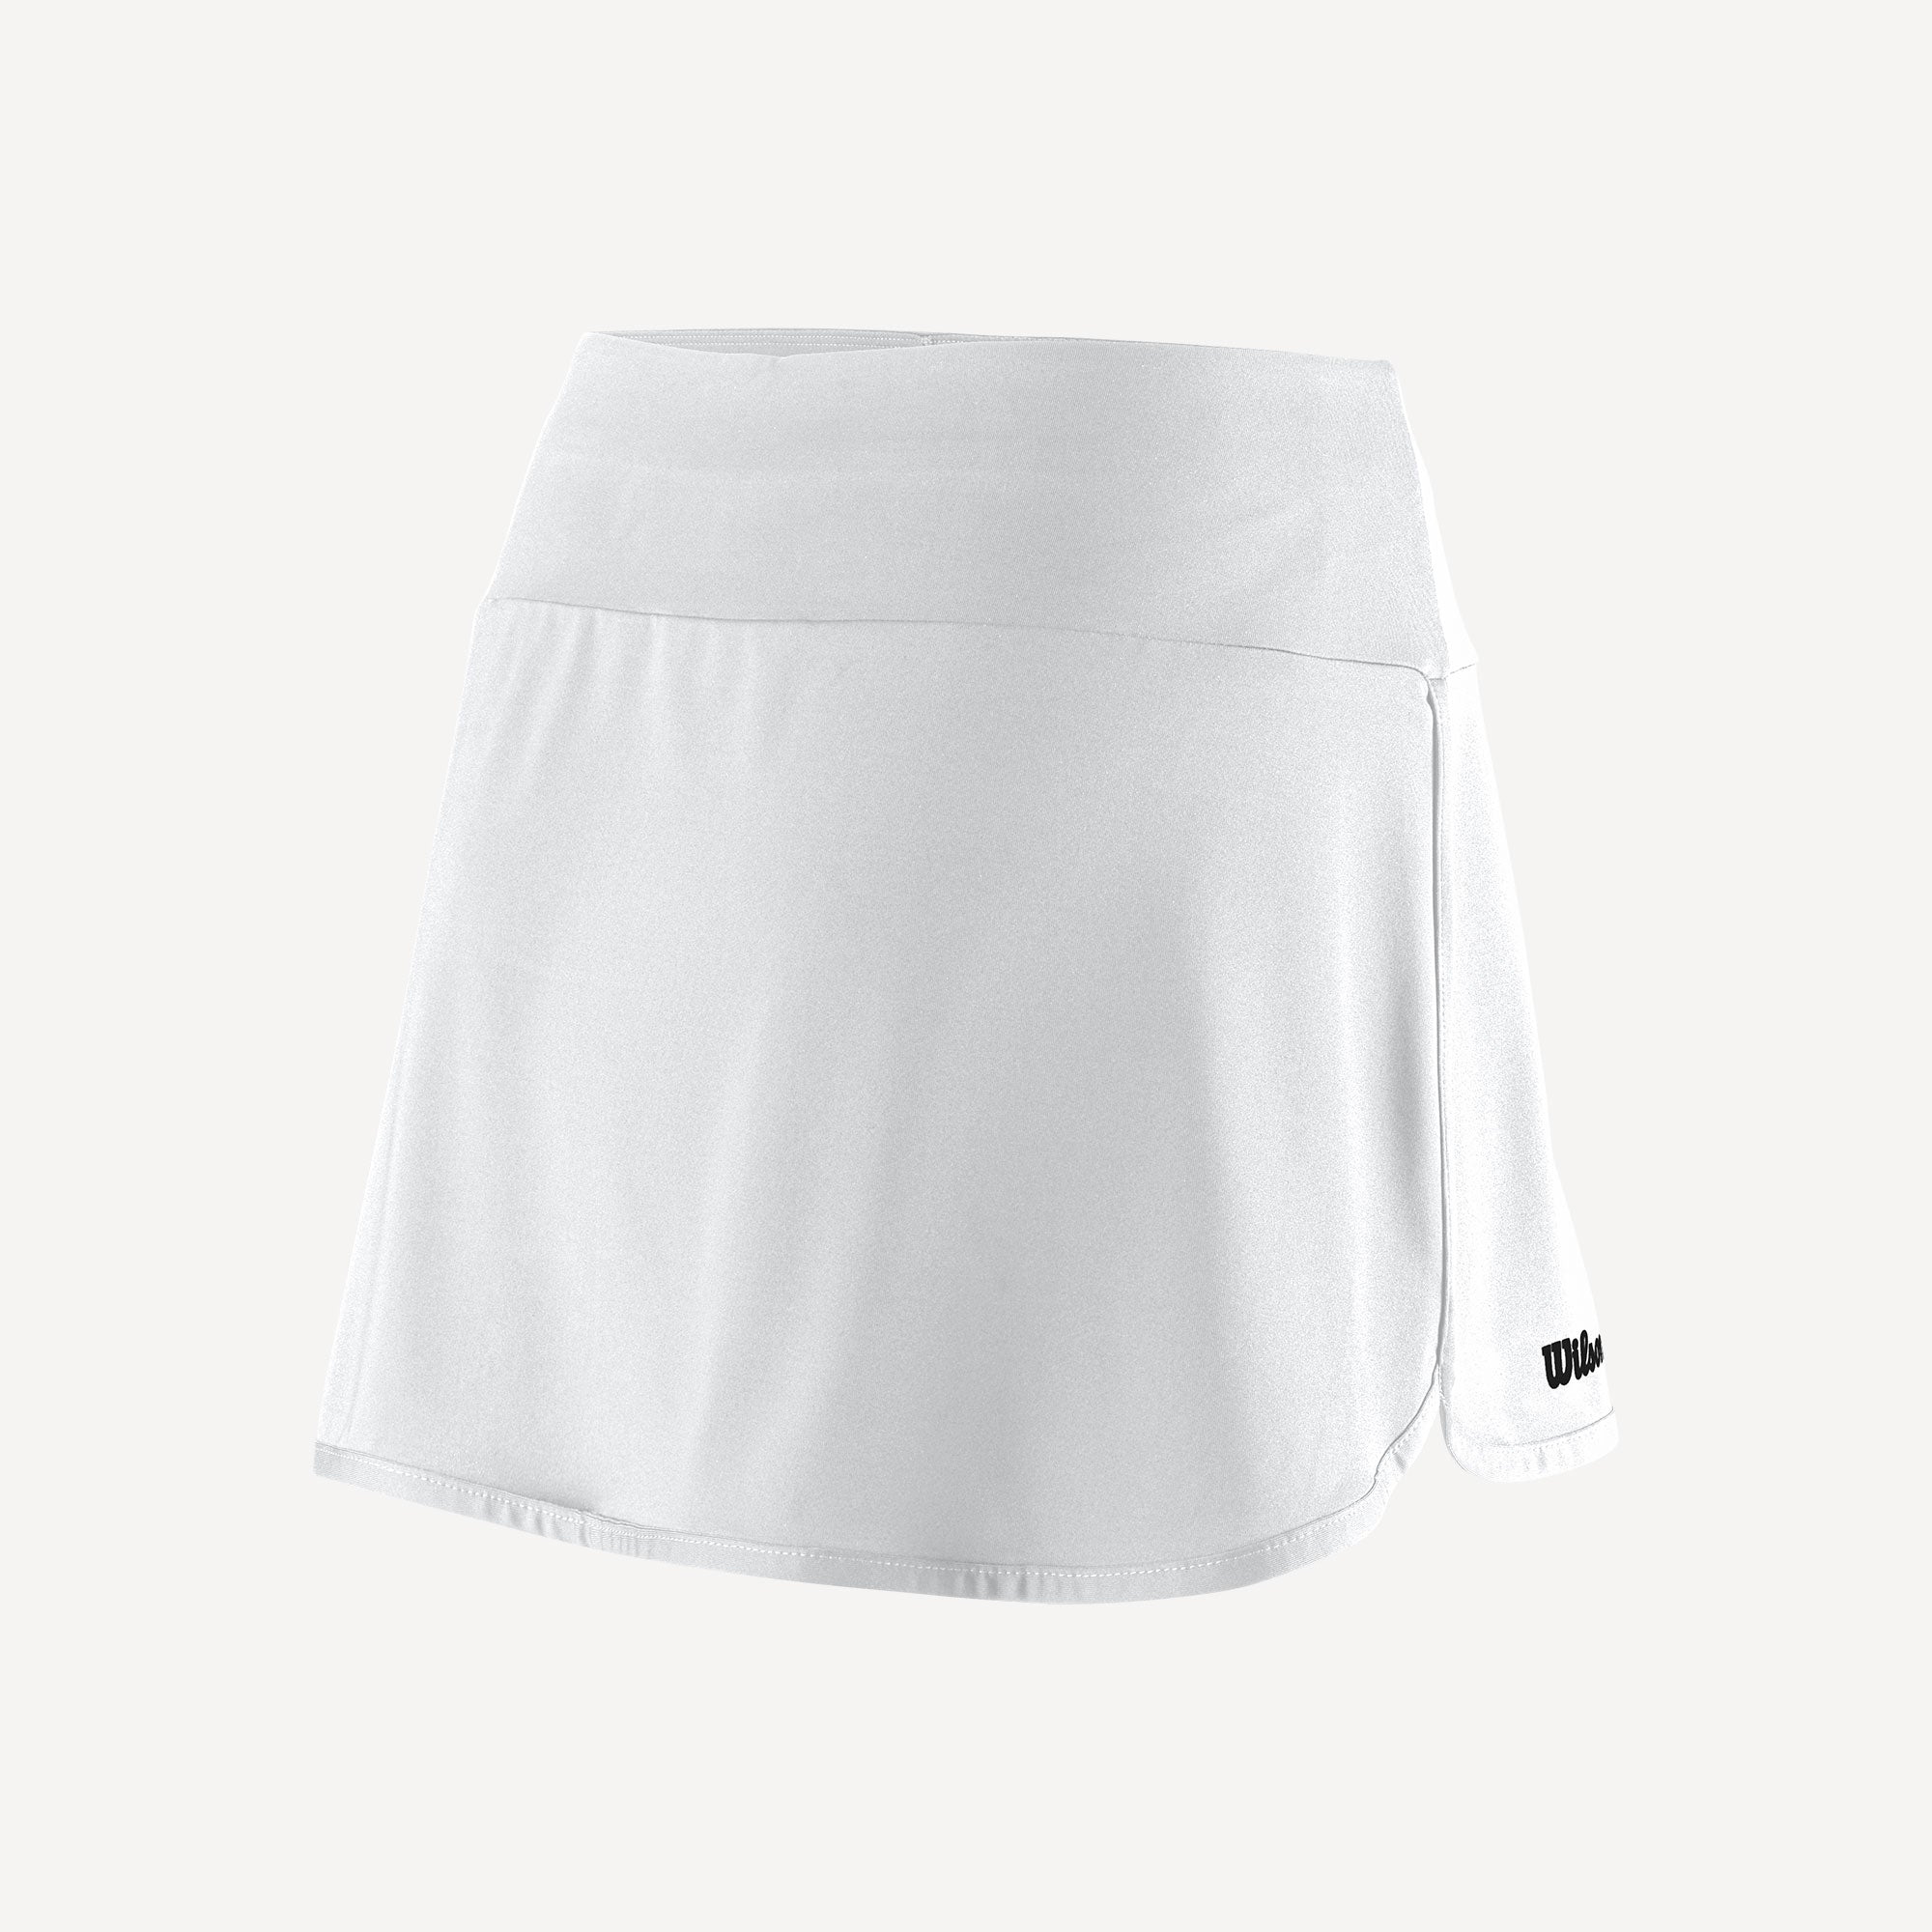 Wilson Team 2 Women's 12.5-Inch Tennis Skirt White (2)